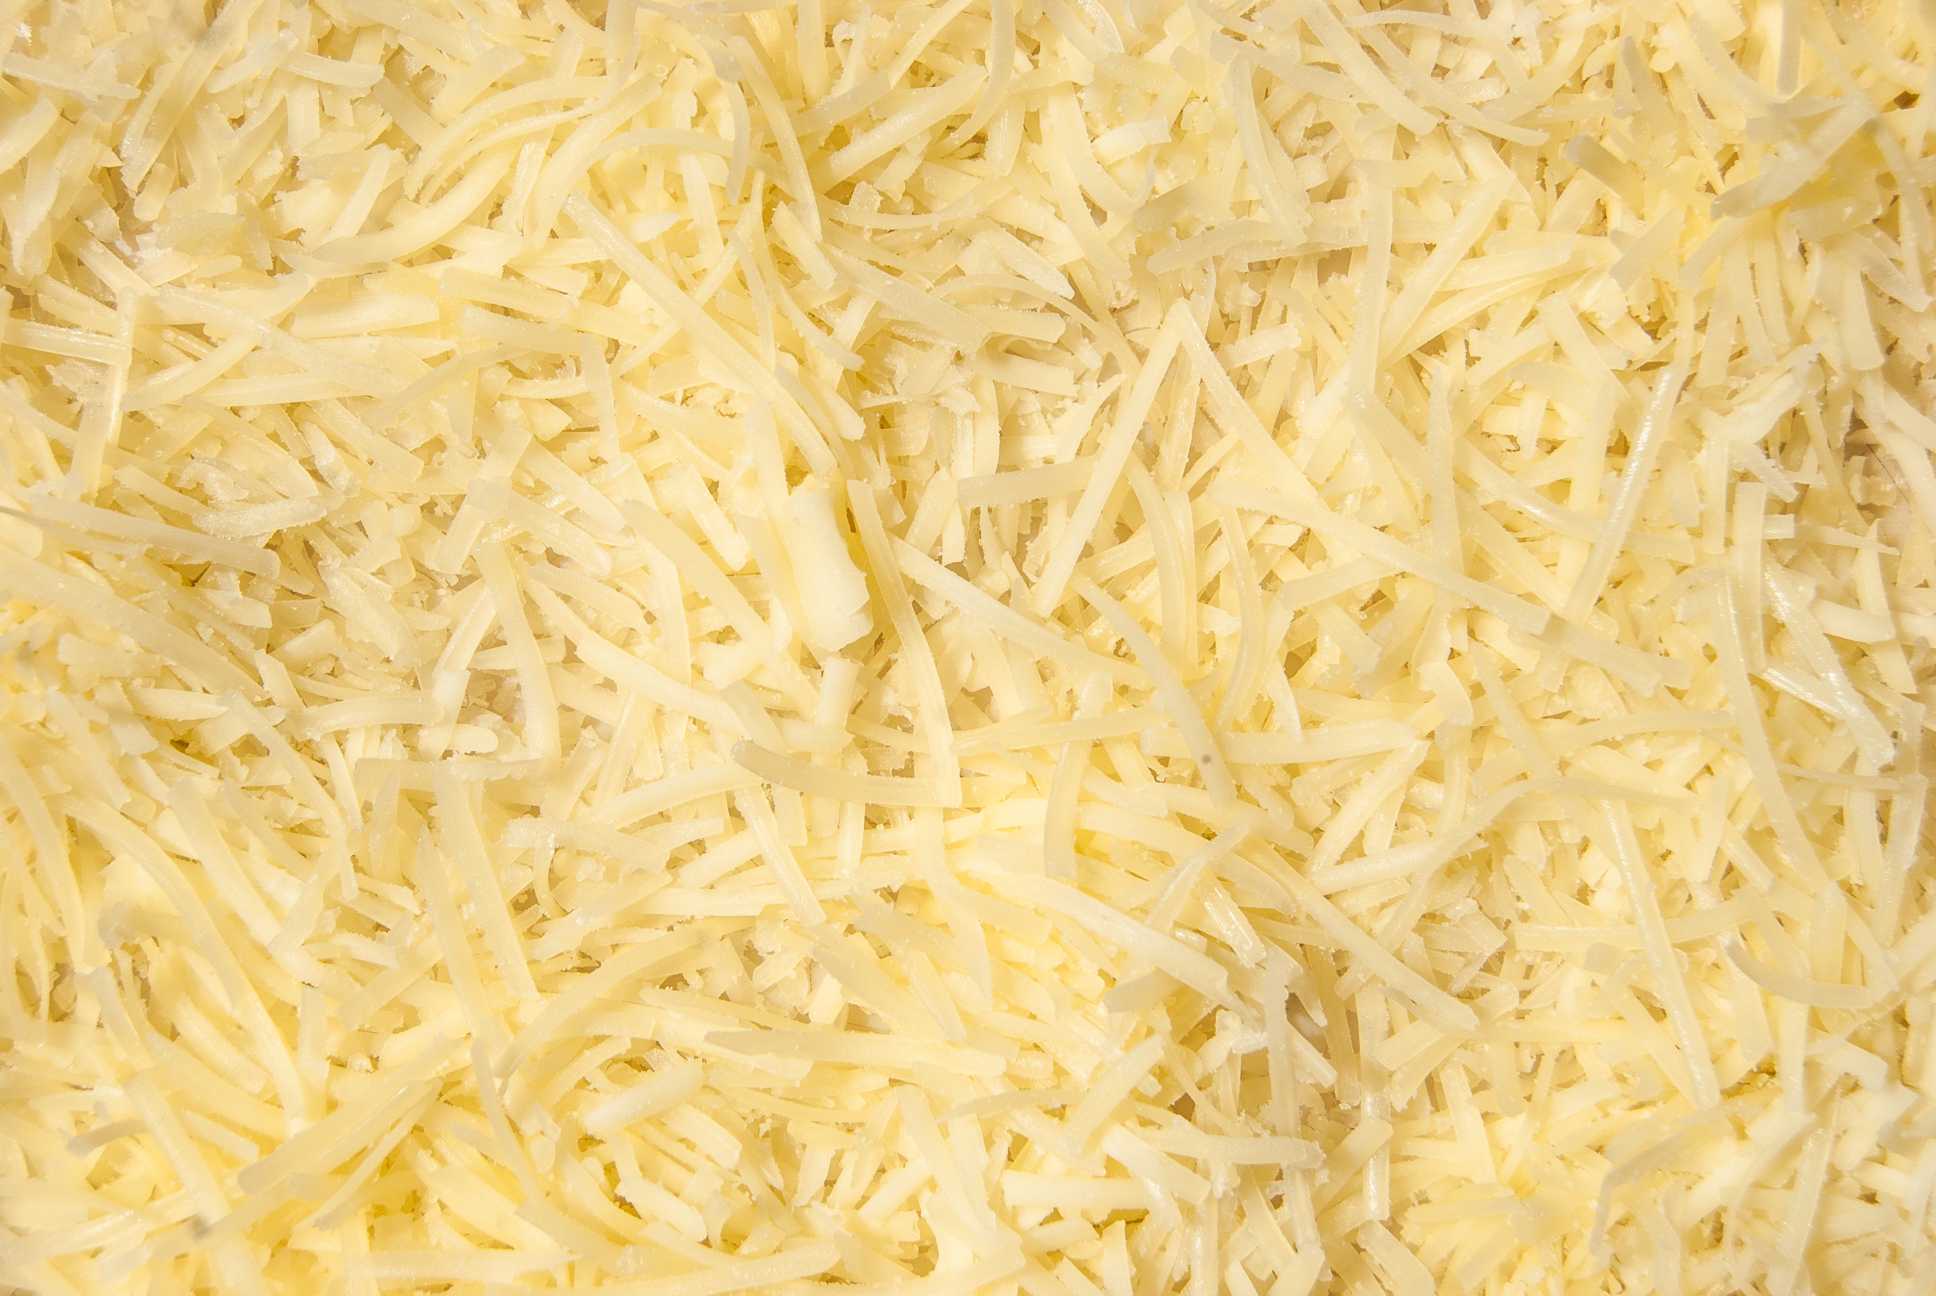 microsoft, preguntas más frecuentes profesionales: ¿afectará el queso a nuestro sistema corporal si solo lo comemos todos los días? en caso afirmativo, ¿por qué? ¿cómo? ¿qué queso es muy recomendable para los niños?